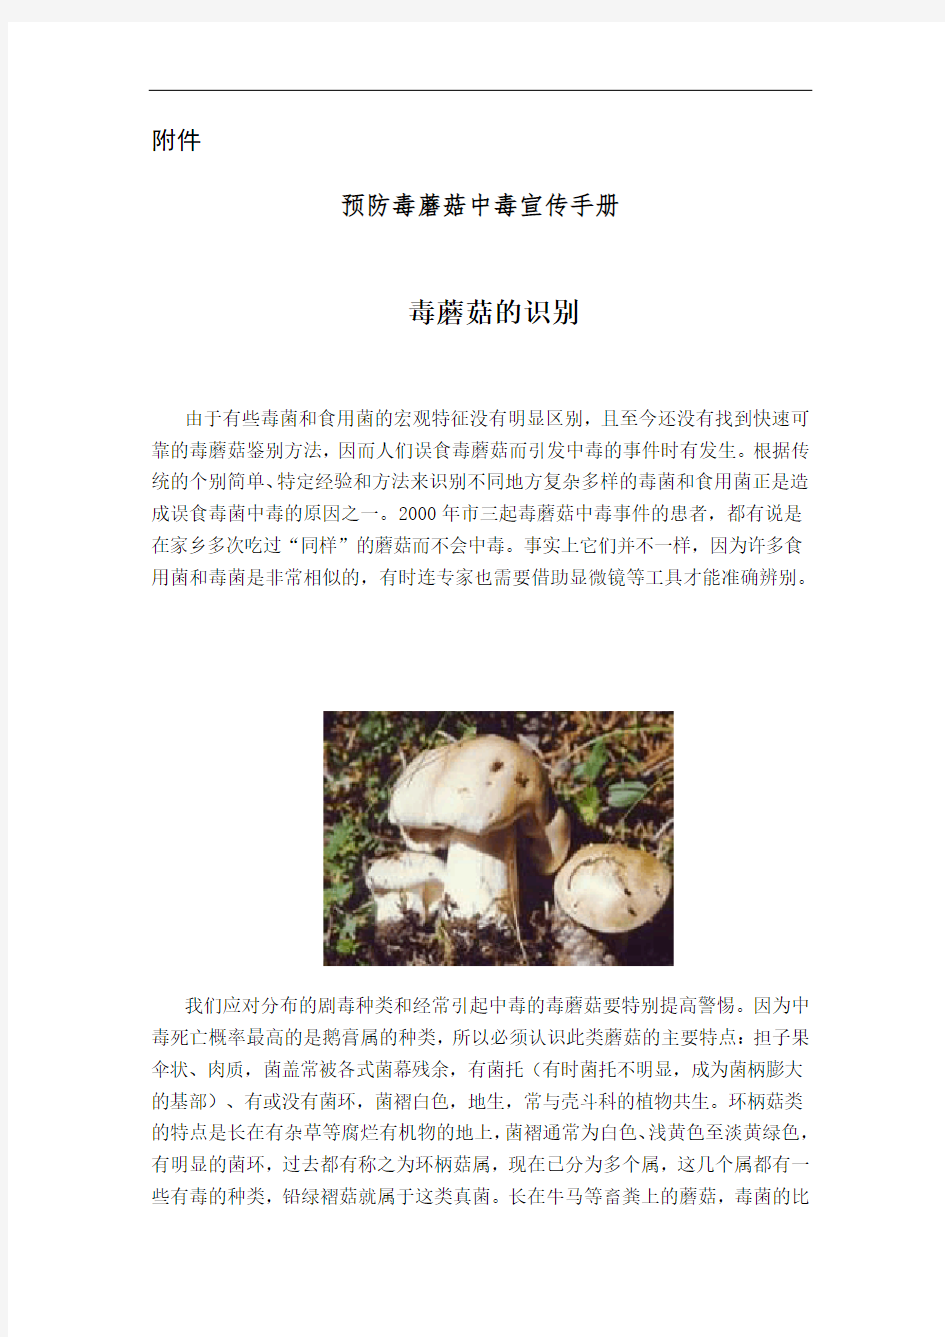 预防毒蘑菇中毒宣传手册簿